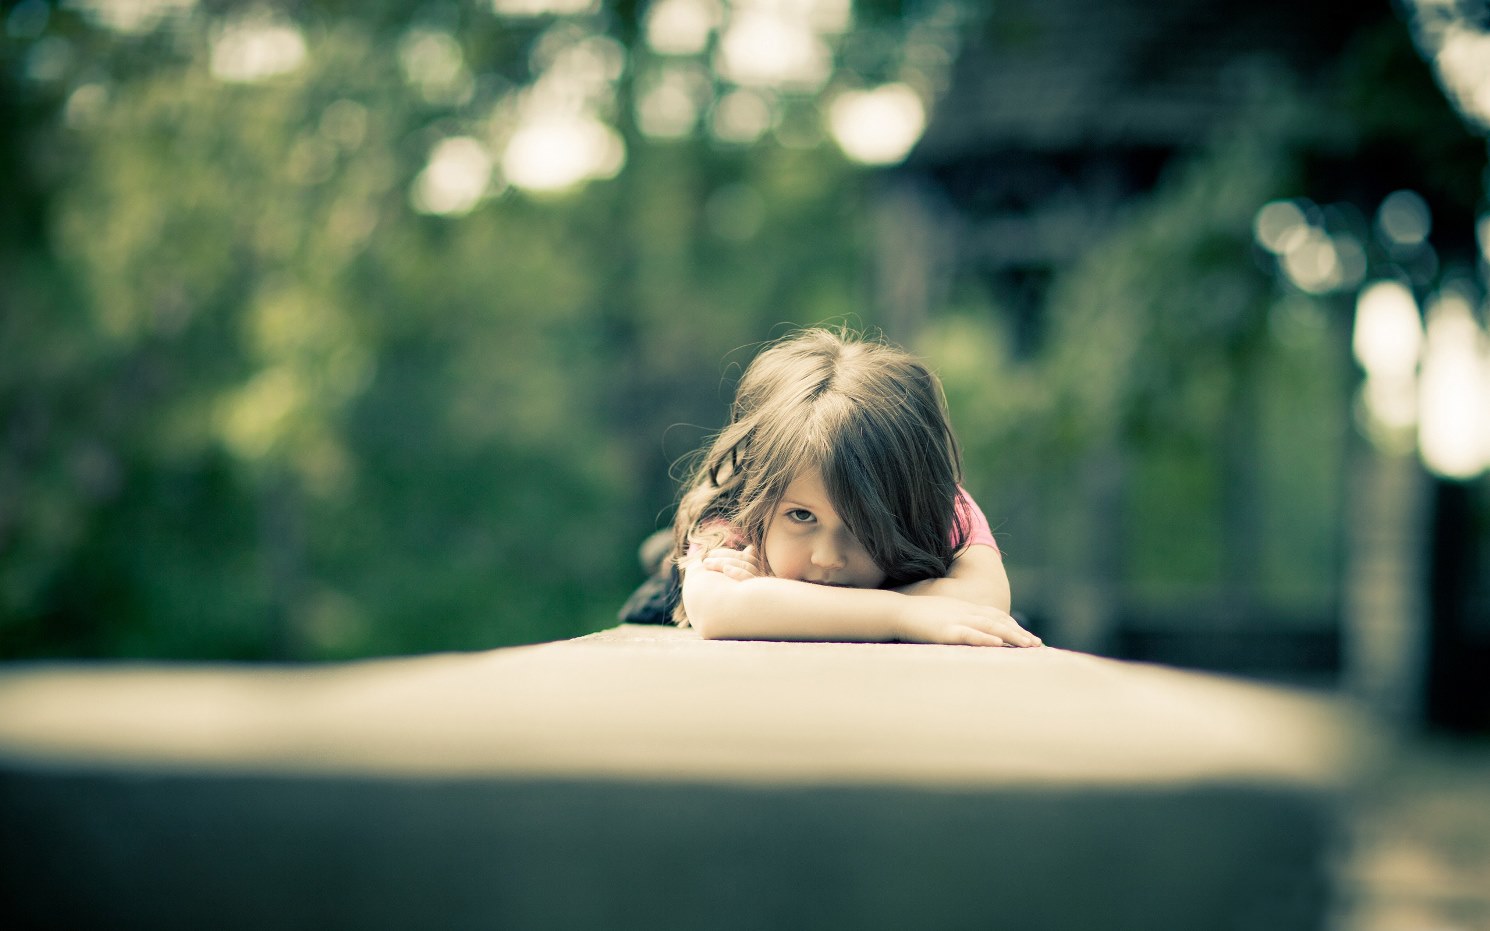 На повышенных тонах: 6 доказательств того, что ссора при ребенке – табу